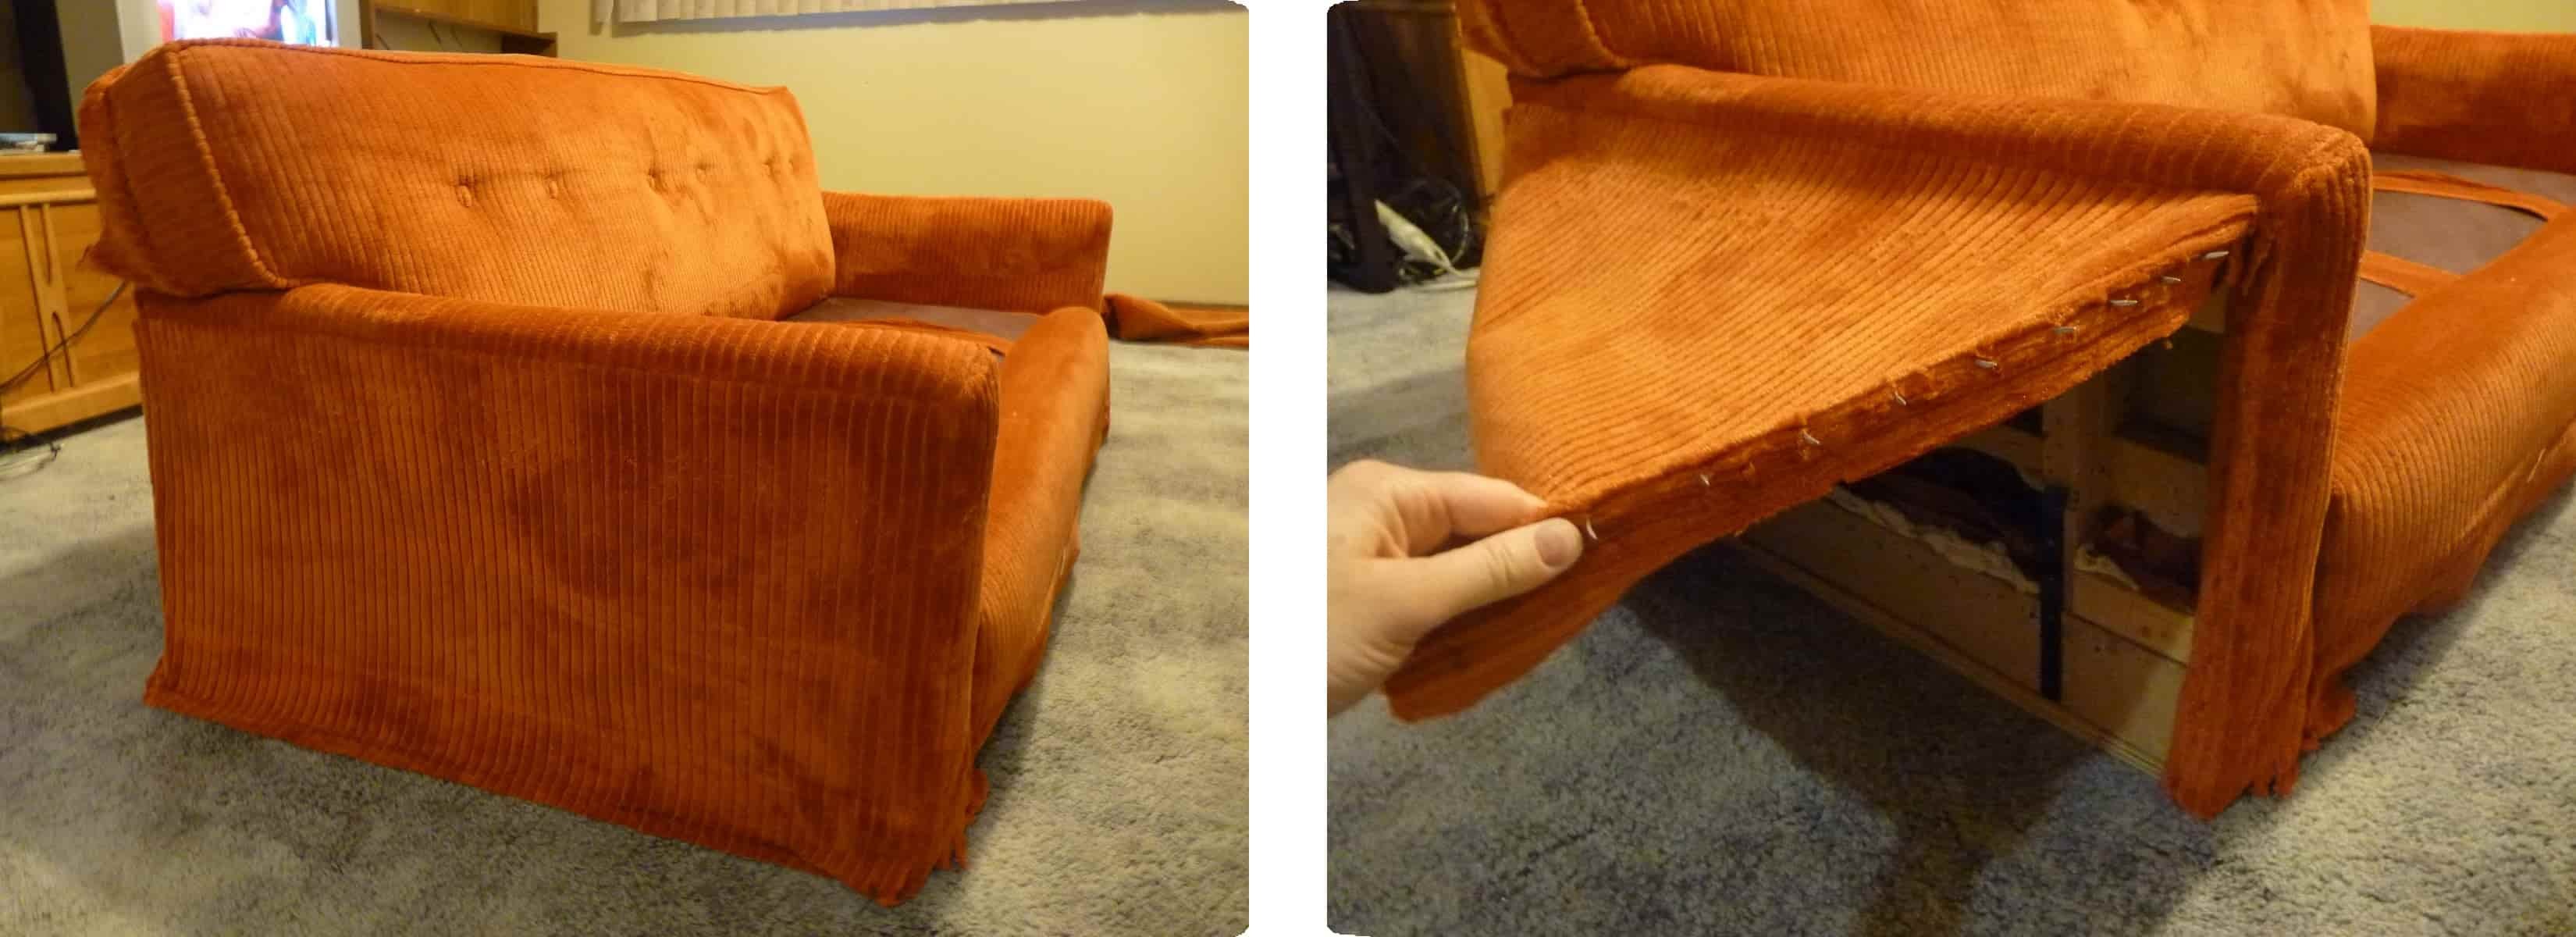 Реставрируем подлокотники дивана